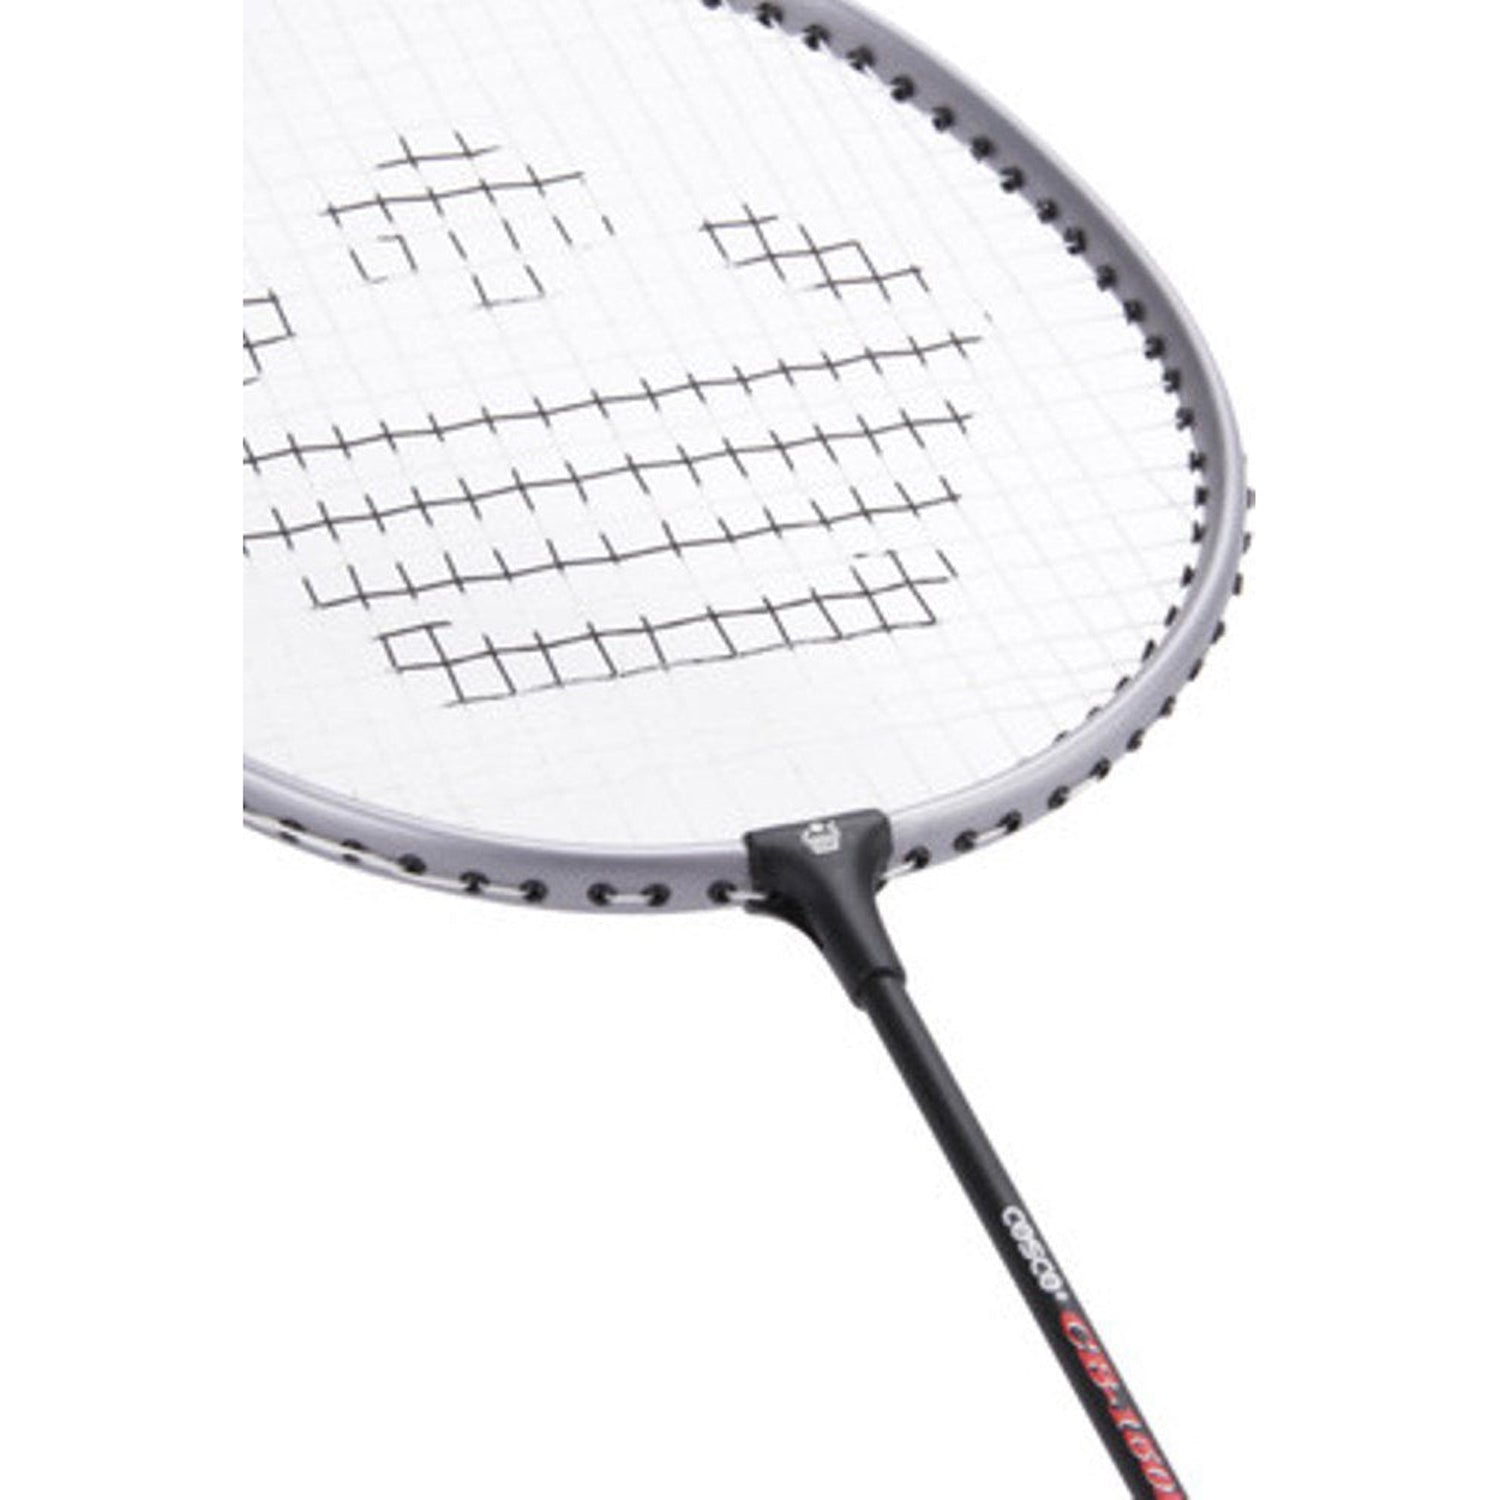 kuaike badminton racket price